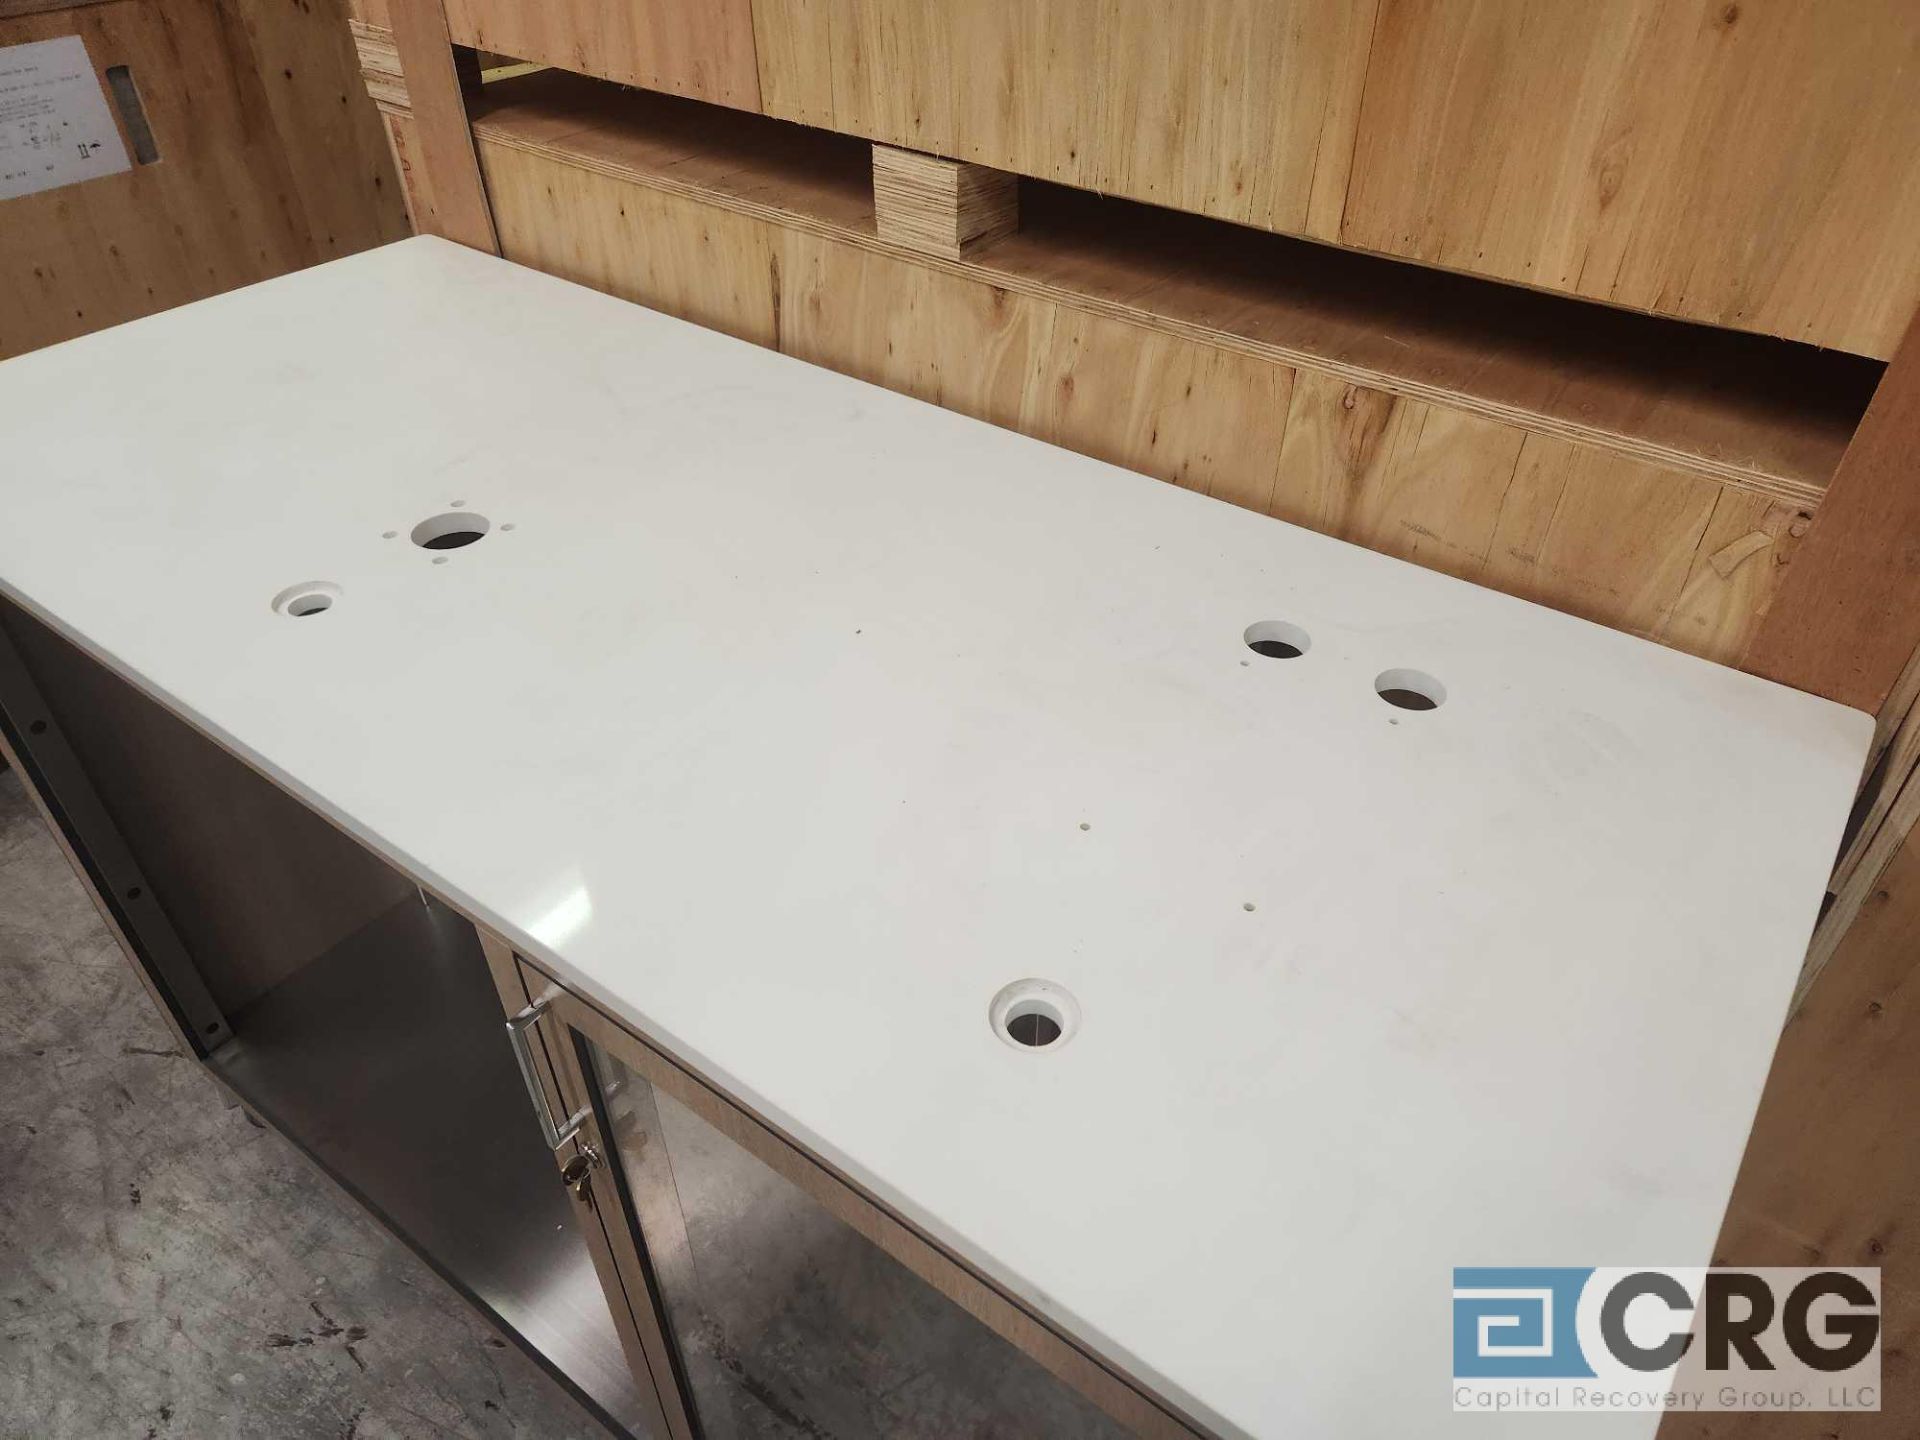 Ramler custom welded stainless steel framed portable bar serving stations - Image 2 of 4